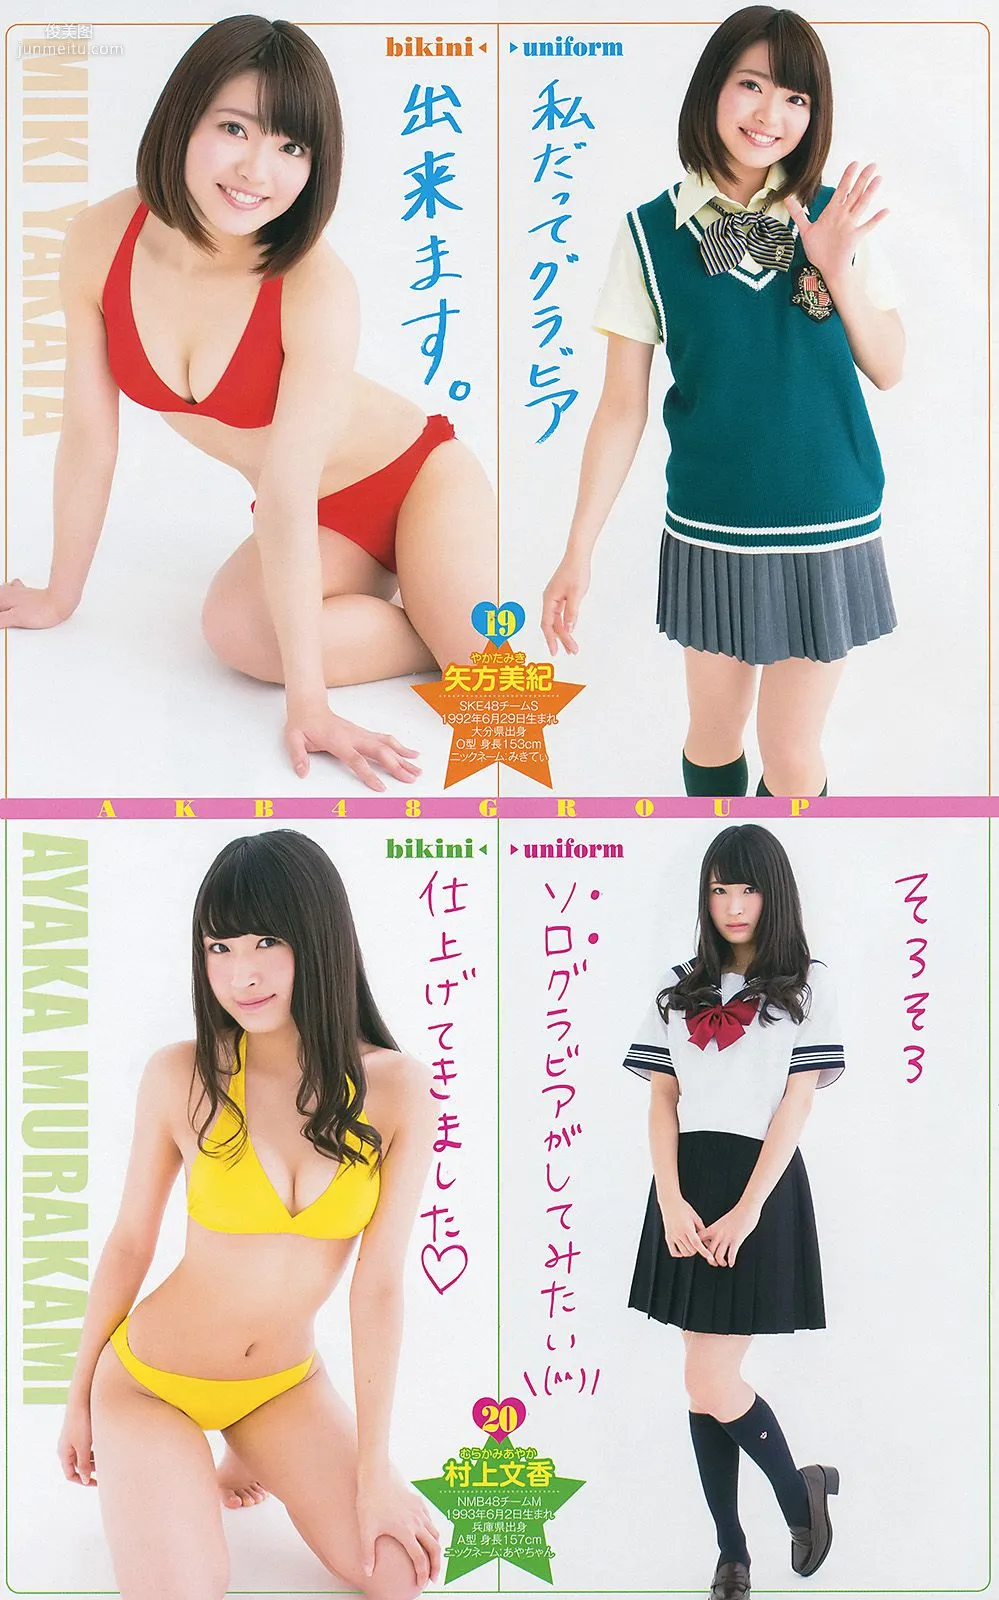 最上もが 48グループ 横山ルリカ [Weekly Young Jump] 2014年No.19 写真杂志14